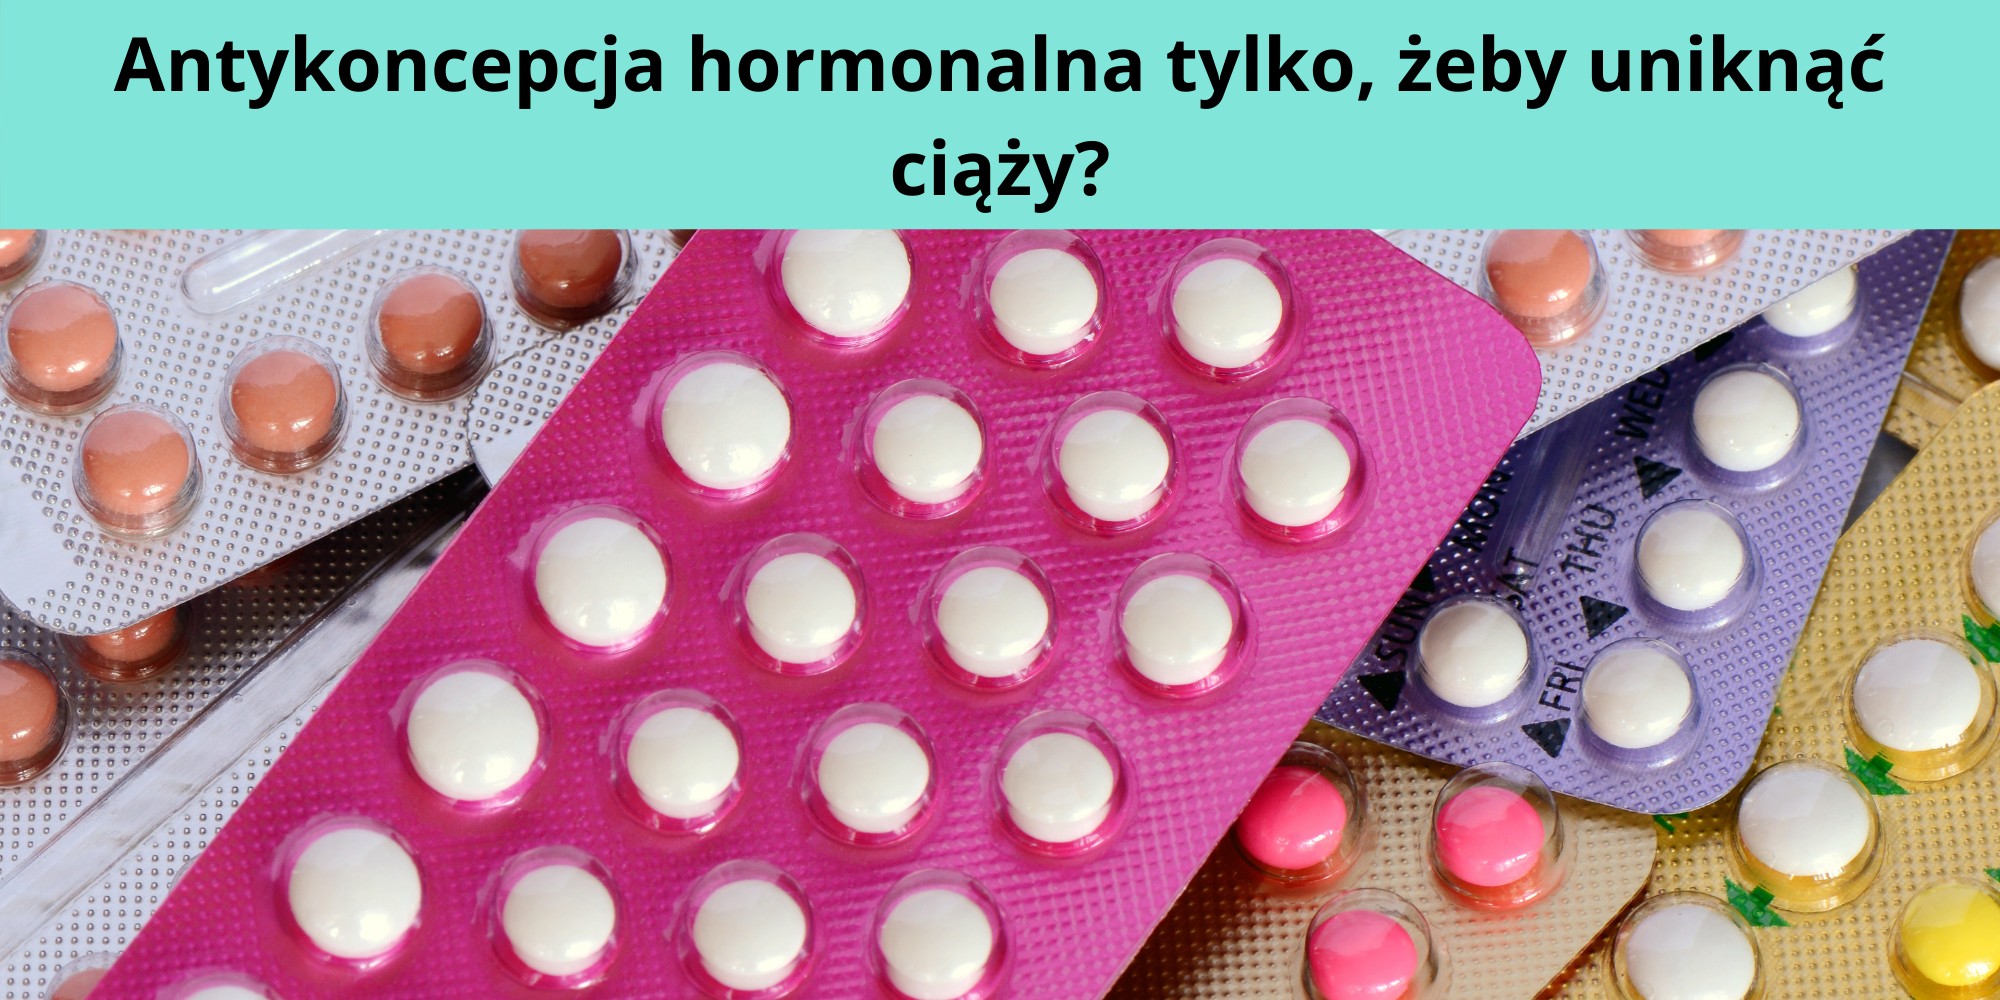 antykoncepcja hormonalna na jakie choroby